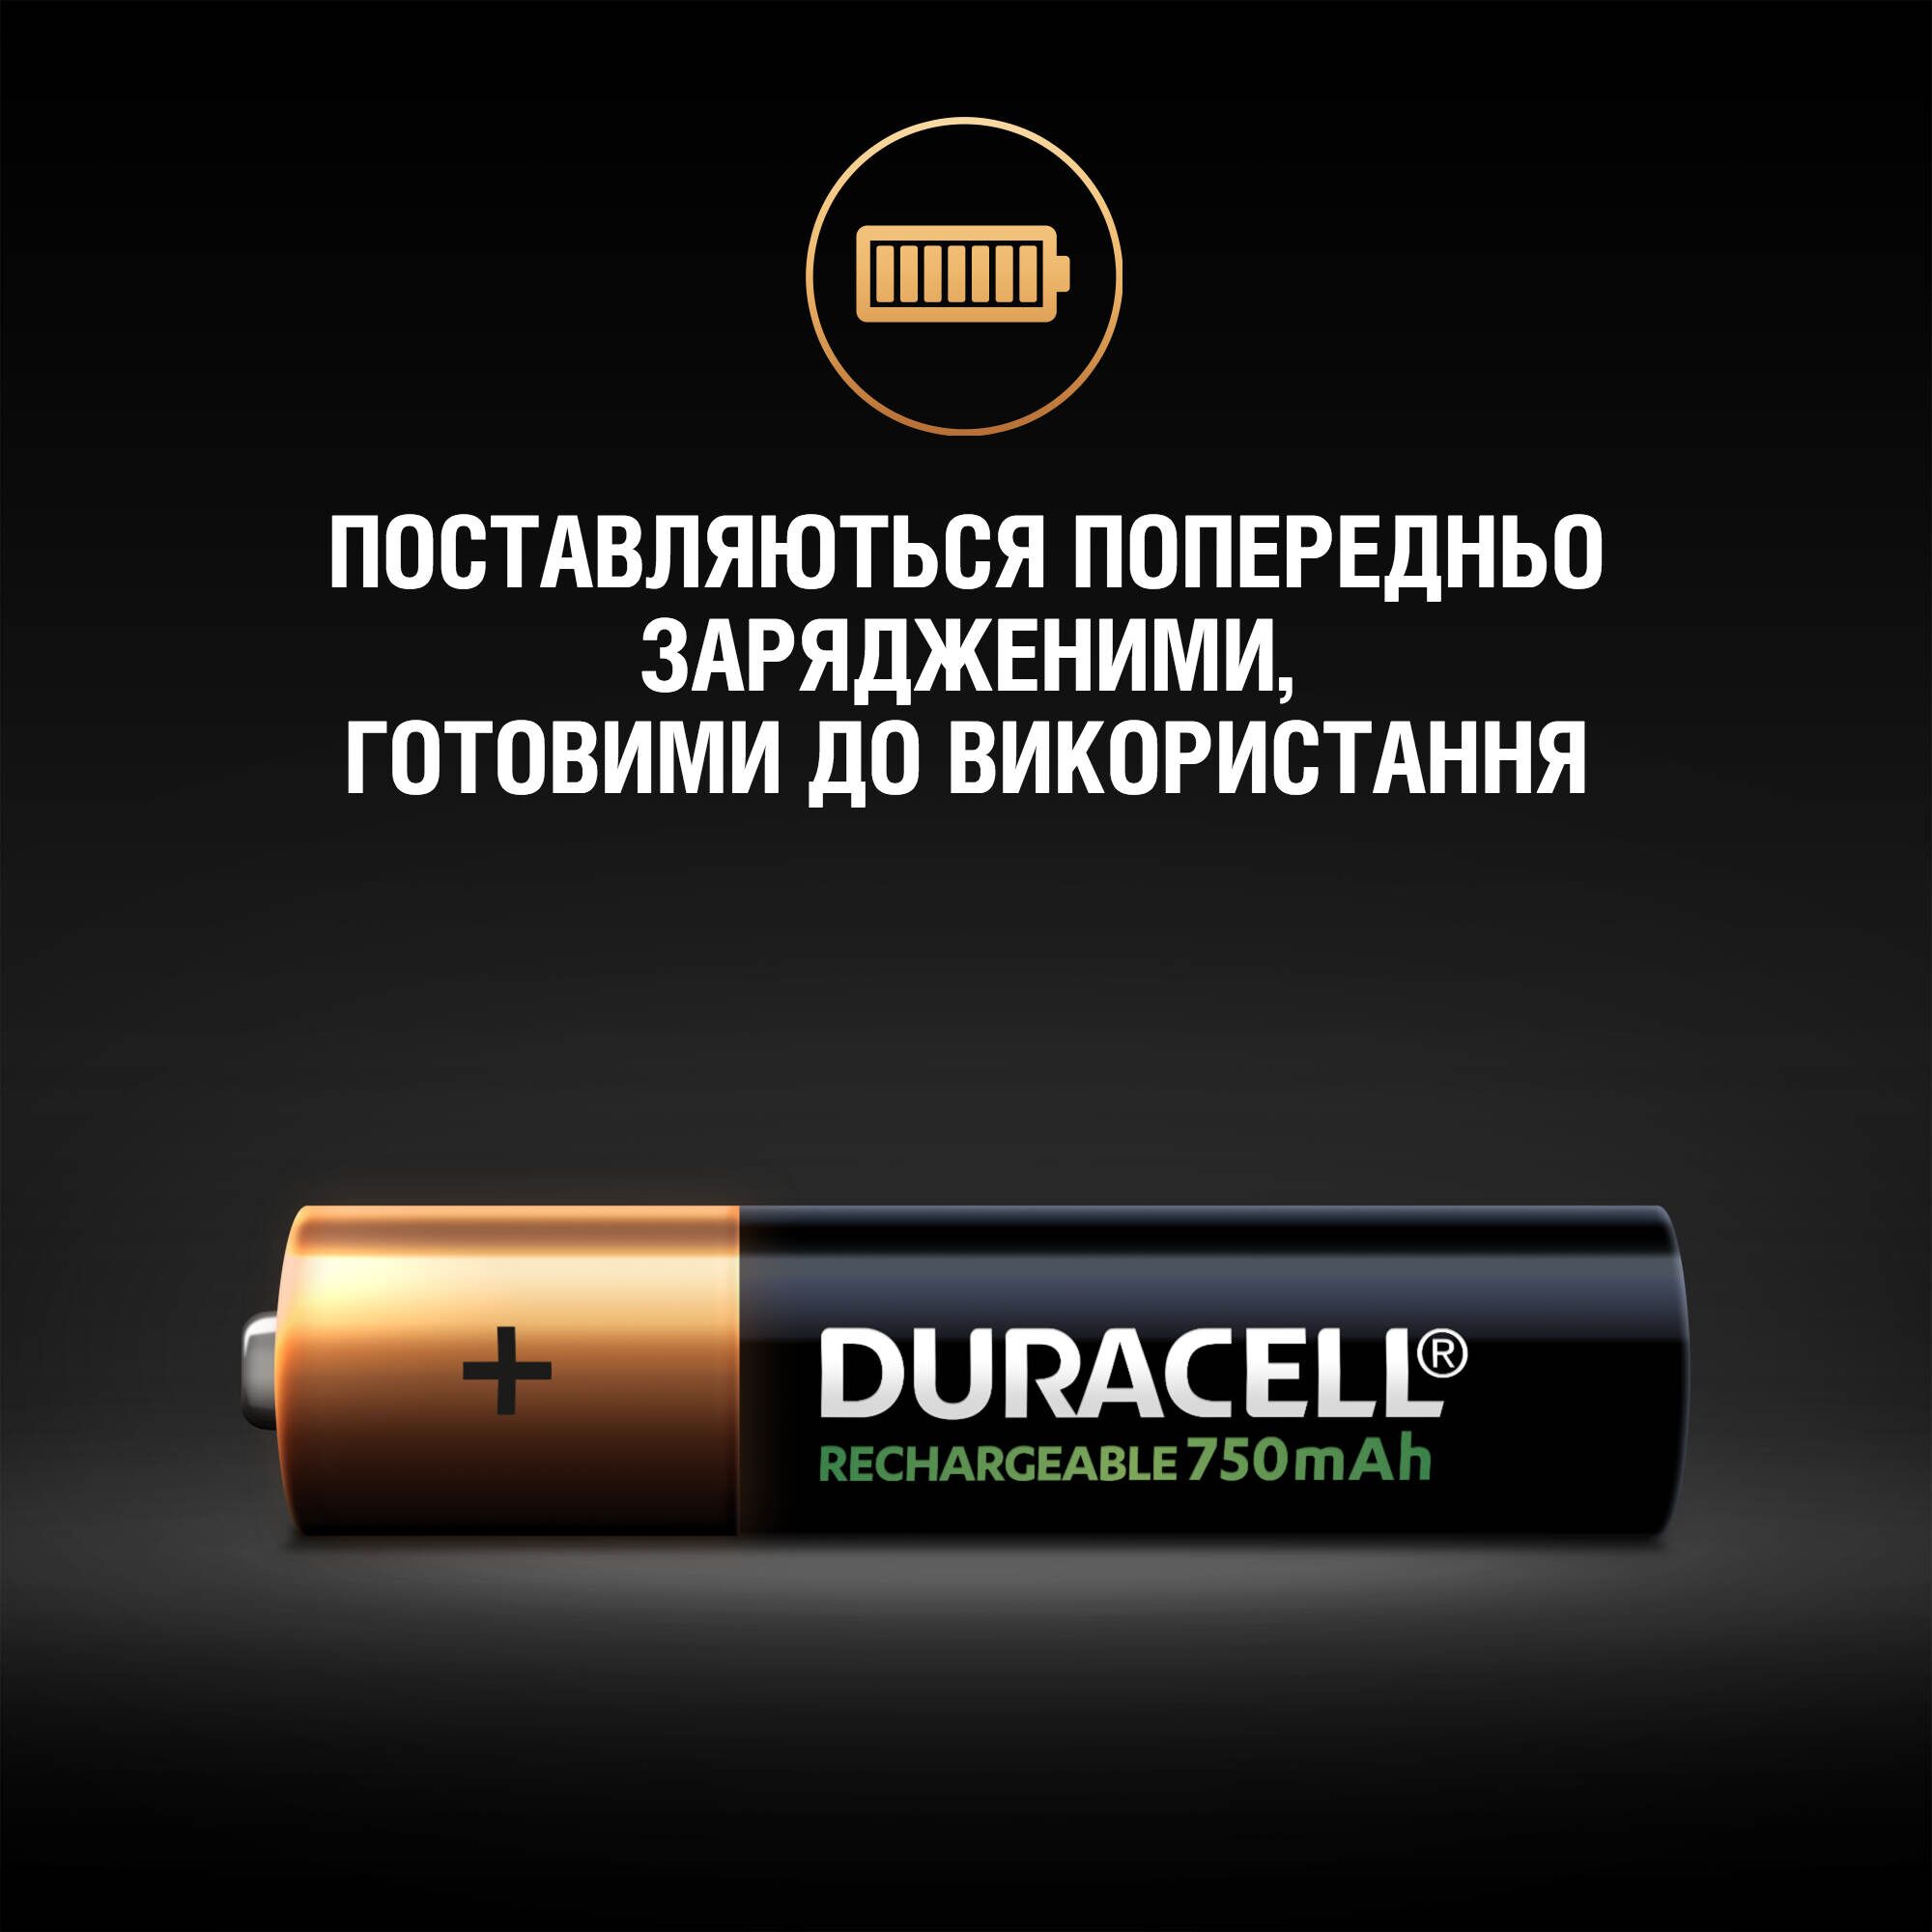 Акумулятор Duracell HR03 (AAA) 750mAh уп. 4 шт